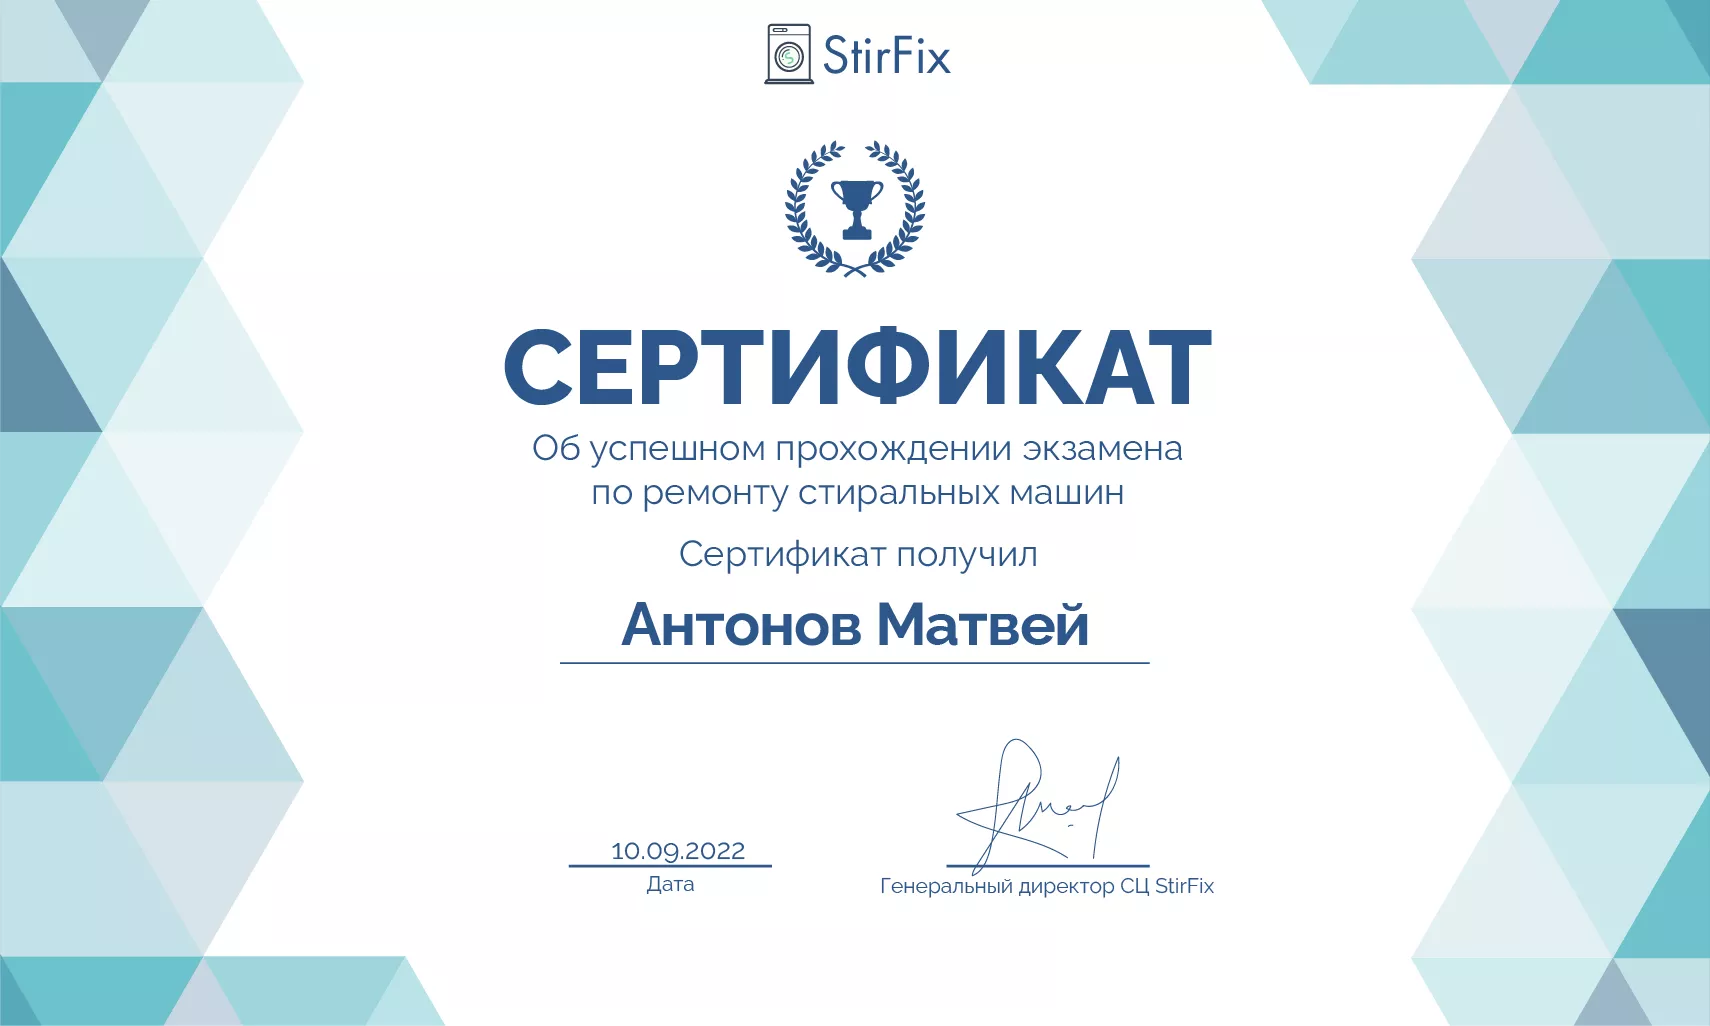 Антонов Матвей сертификат мастера по ремонту стиральных машин